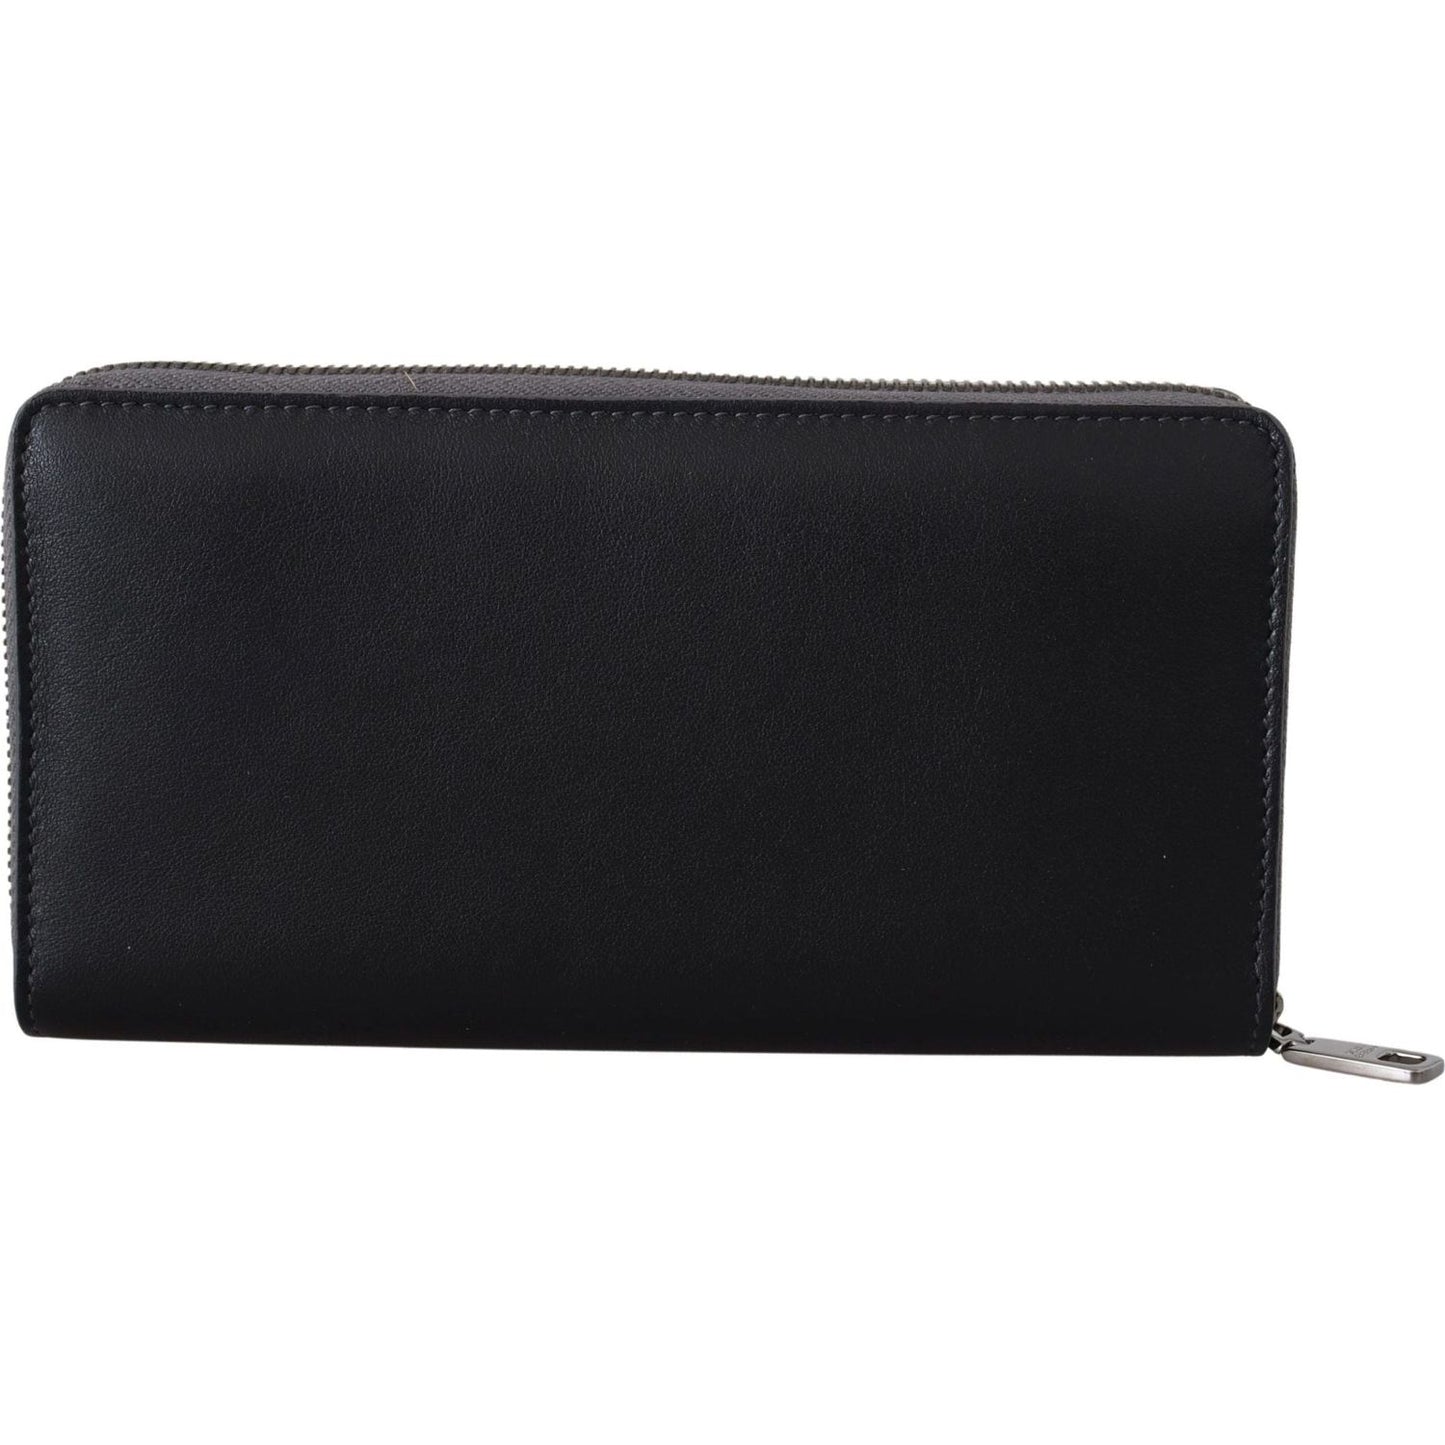 Dolce & Gabbana Elegant Textured Leather Zip-Around Wallet black-zip-around-continental-clutch-leather-wallet